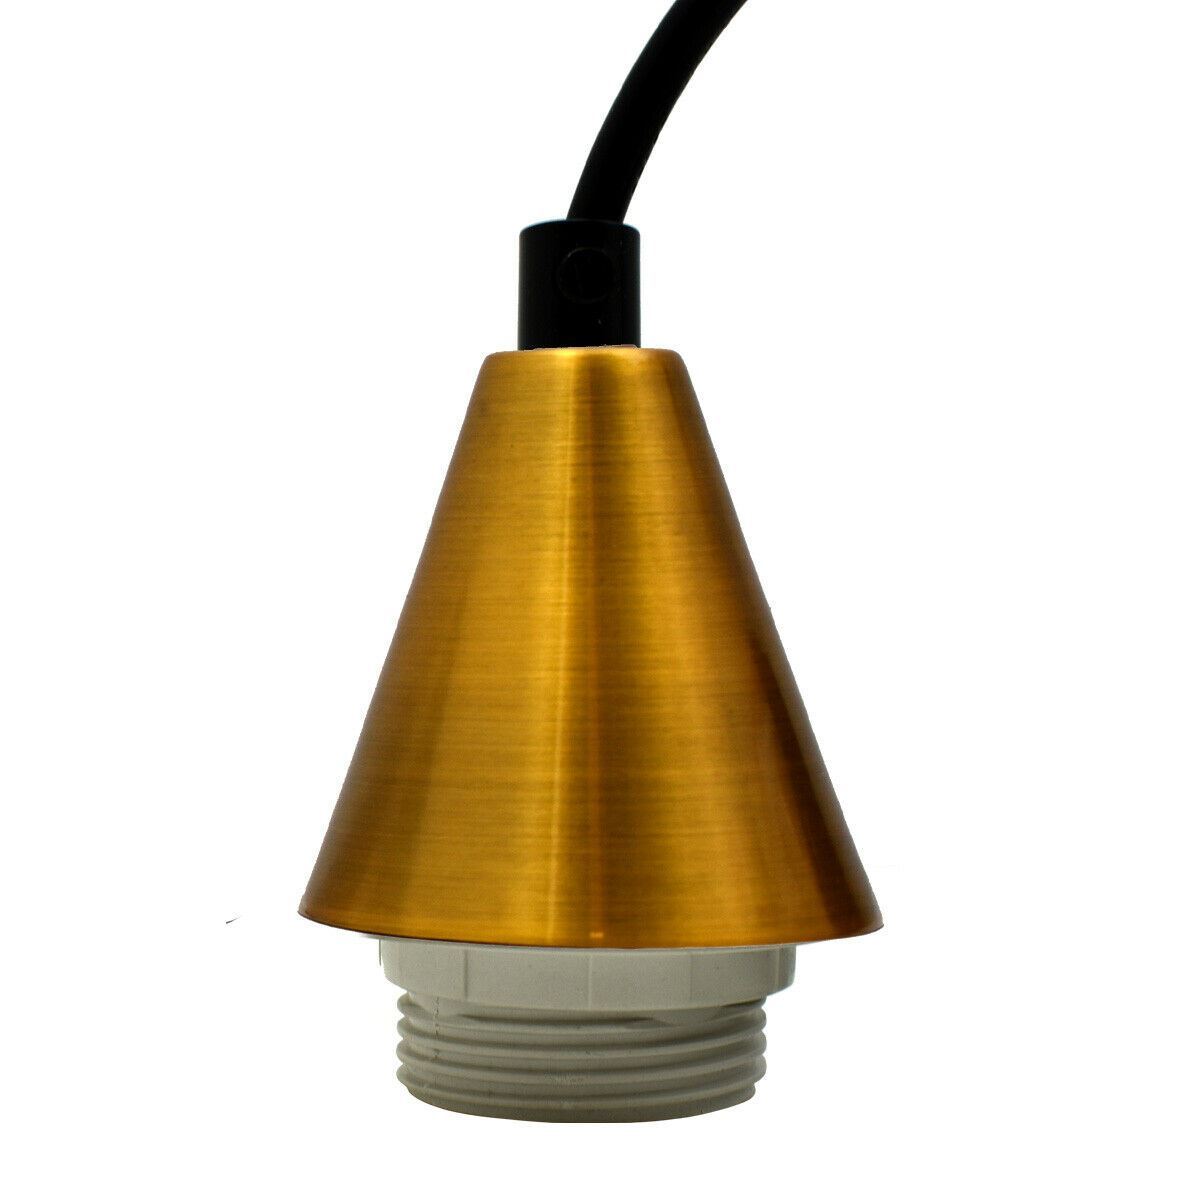 1M E27 Screw Lamp Bulb Holder Pendant Lamp Holder for Bedroom, Dining Room and Kitchen